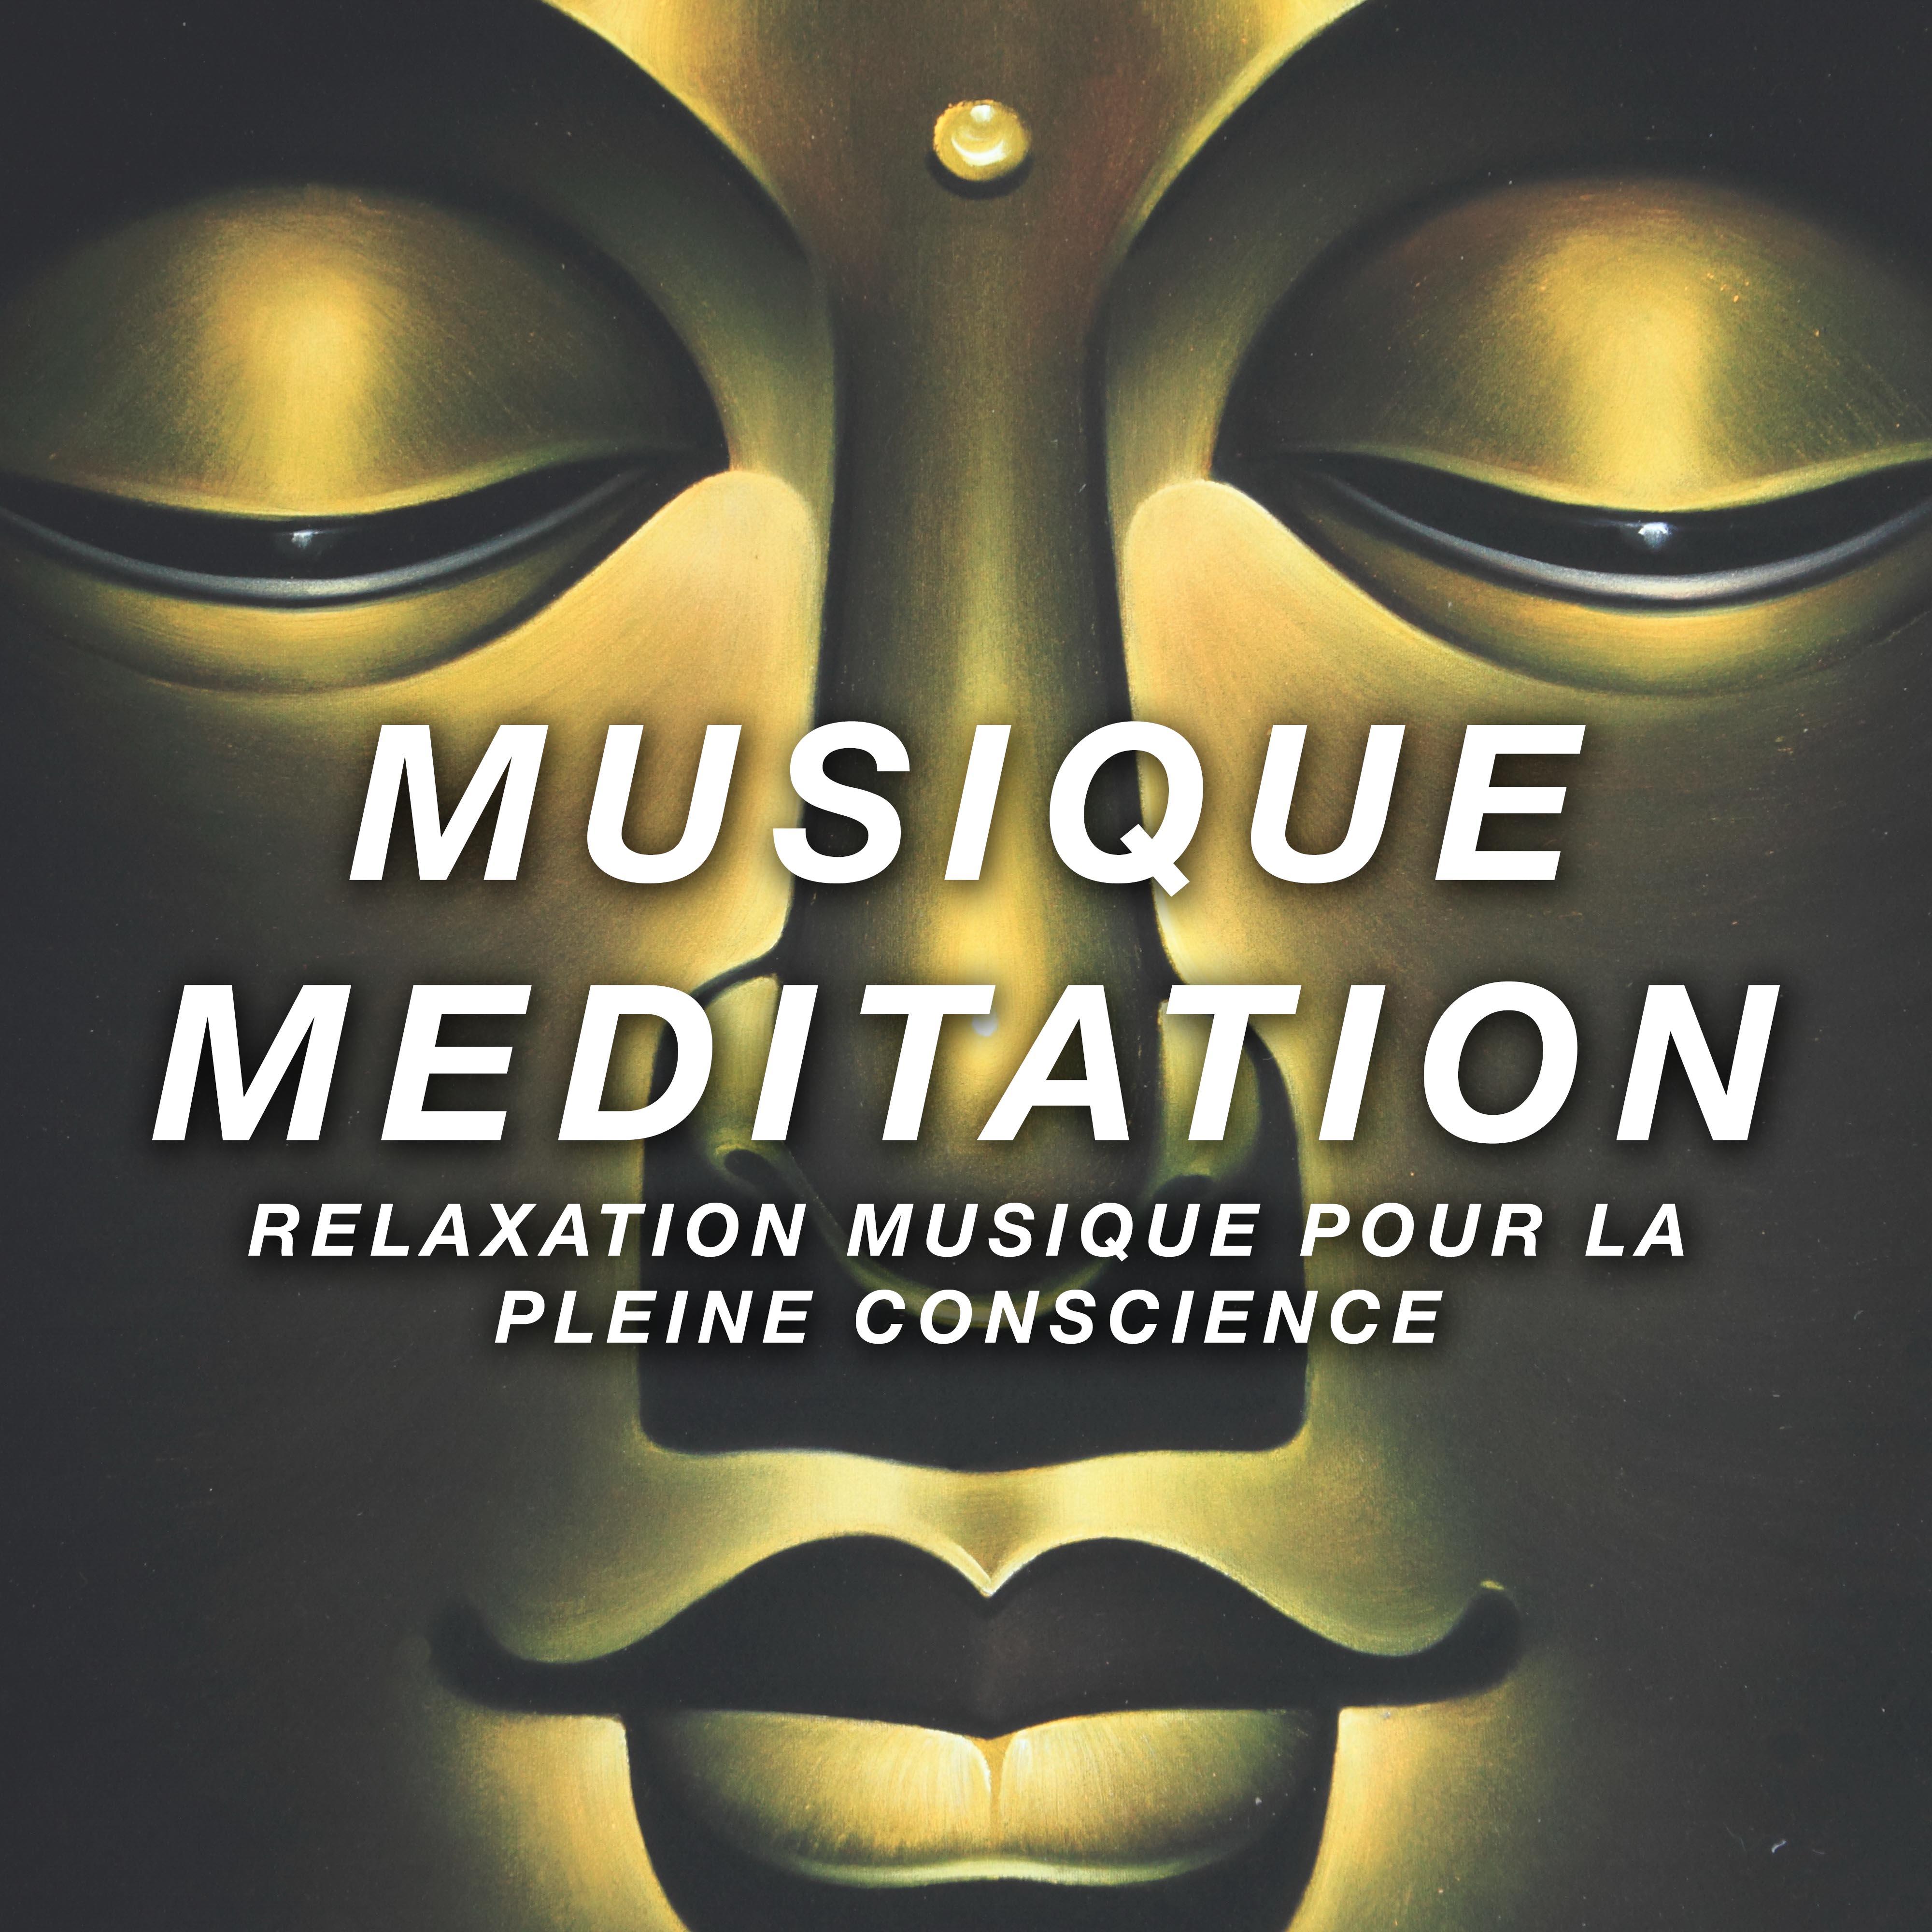 Musique Meditation: Relaxation Musique pour la Pleine Conscience